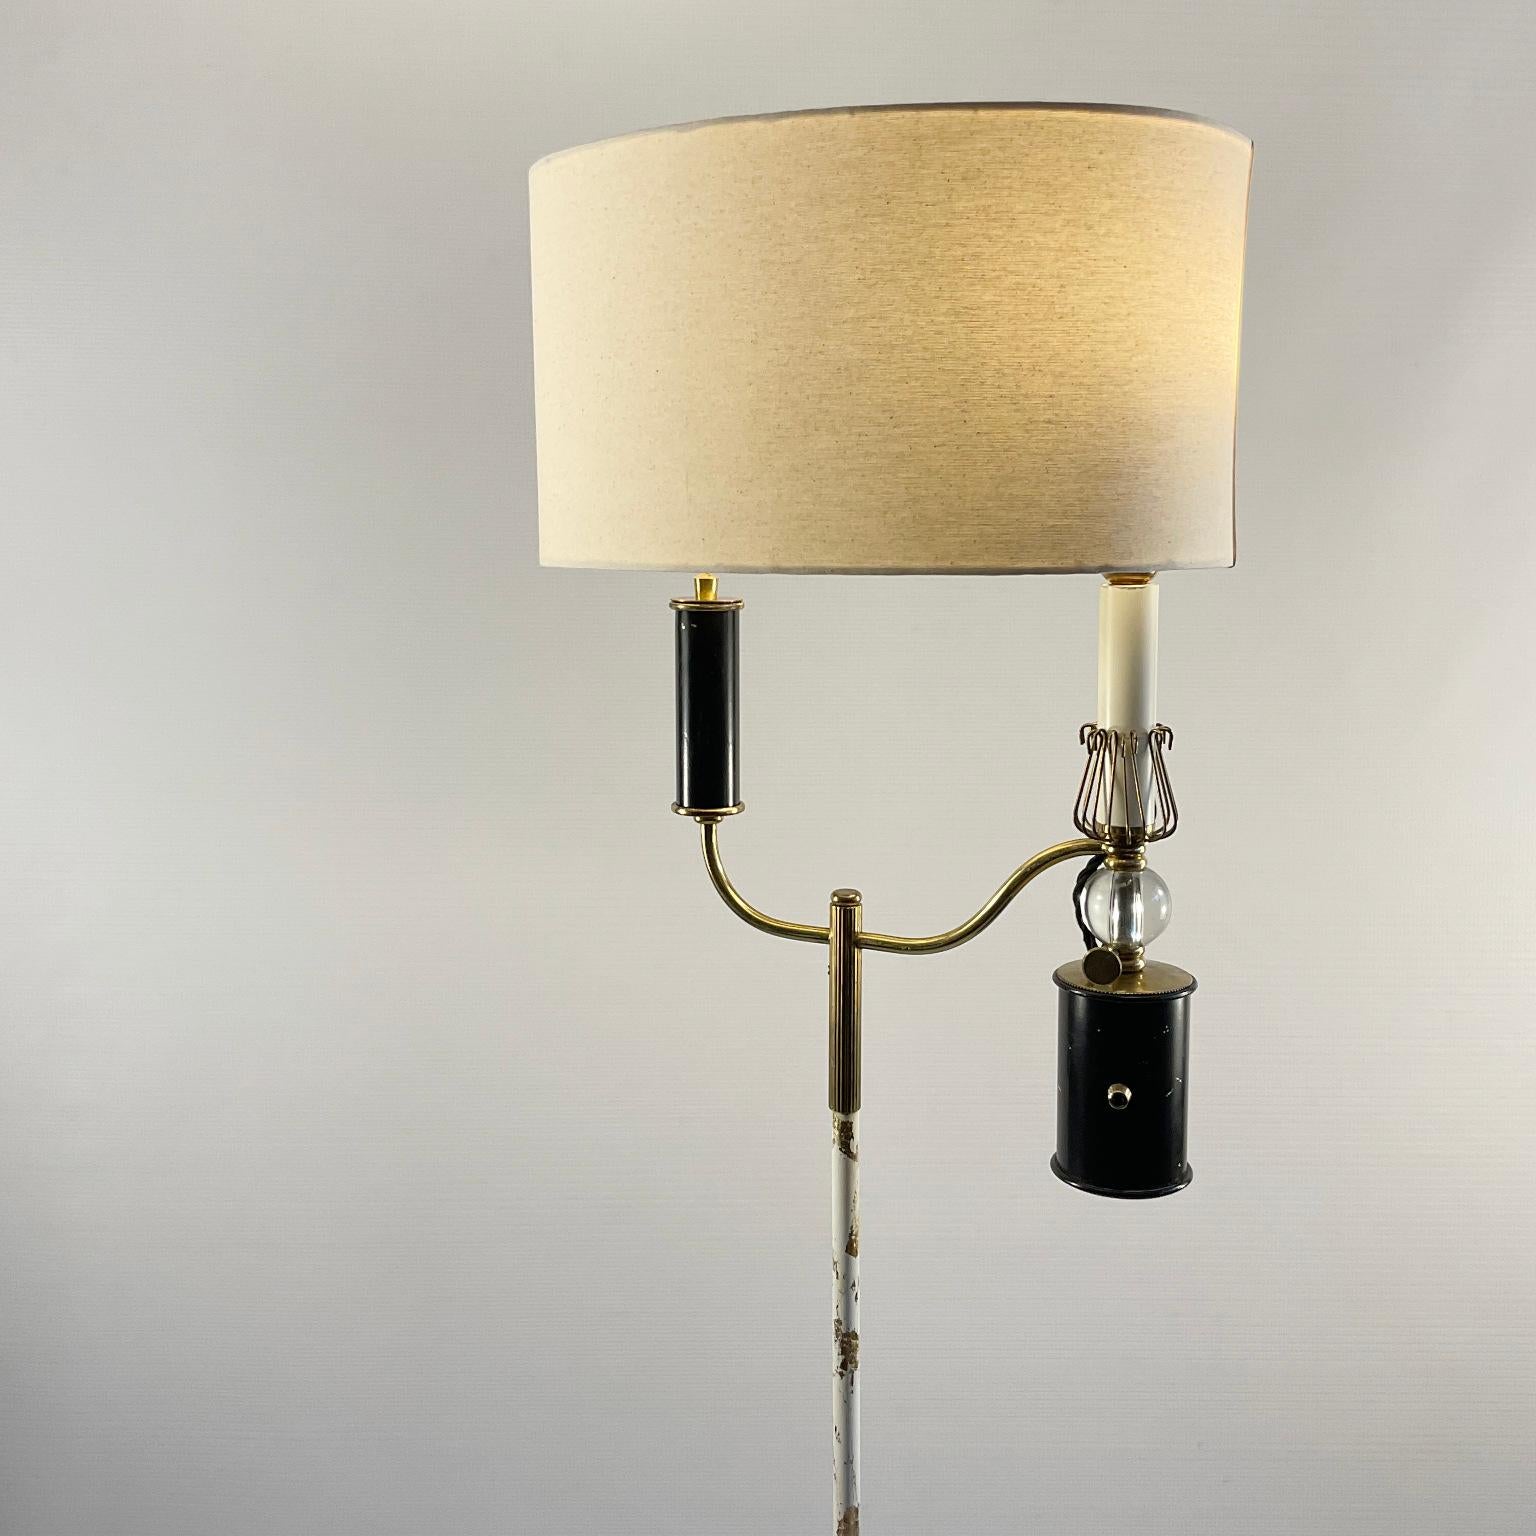 Le design de ce lampadaire des années 1950 fabriqué par la Maison Lunel s'inspire de la lampe à huile Argand inventée au XVIIIe siècle par Aimé Argand et popularisée plus tard en France par un pharmacien du nom d'Antoine Quinquet qui y apporta des